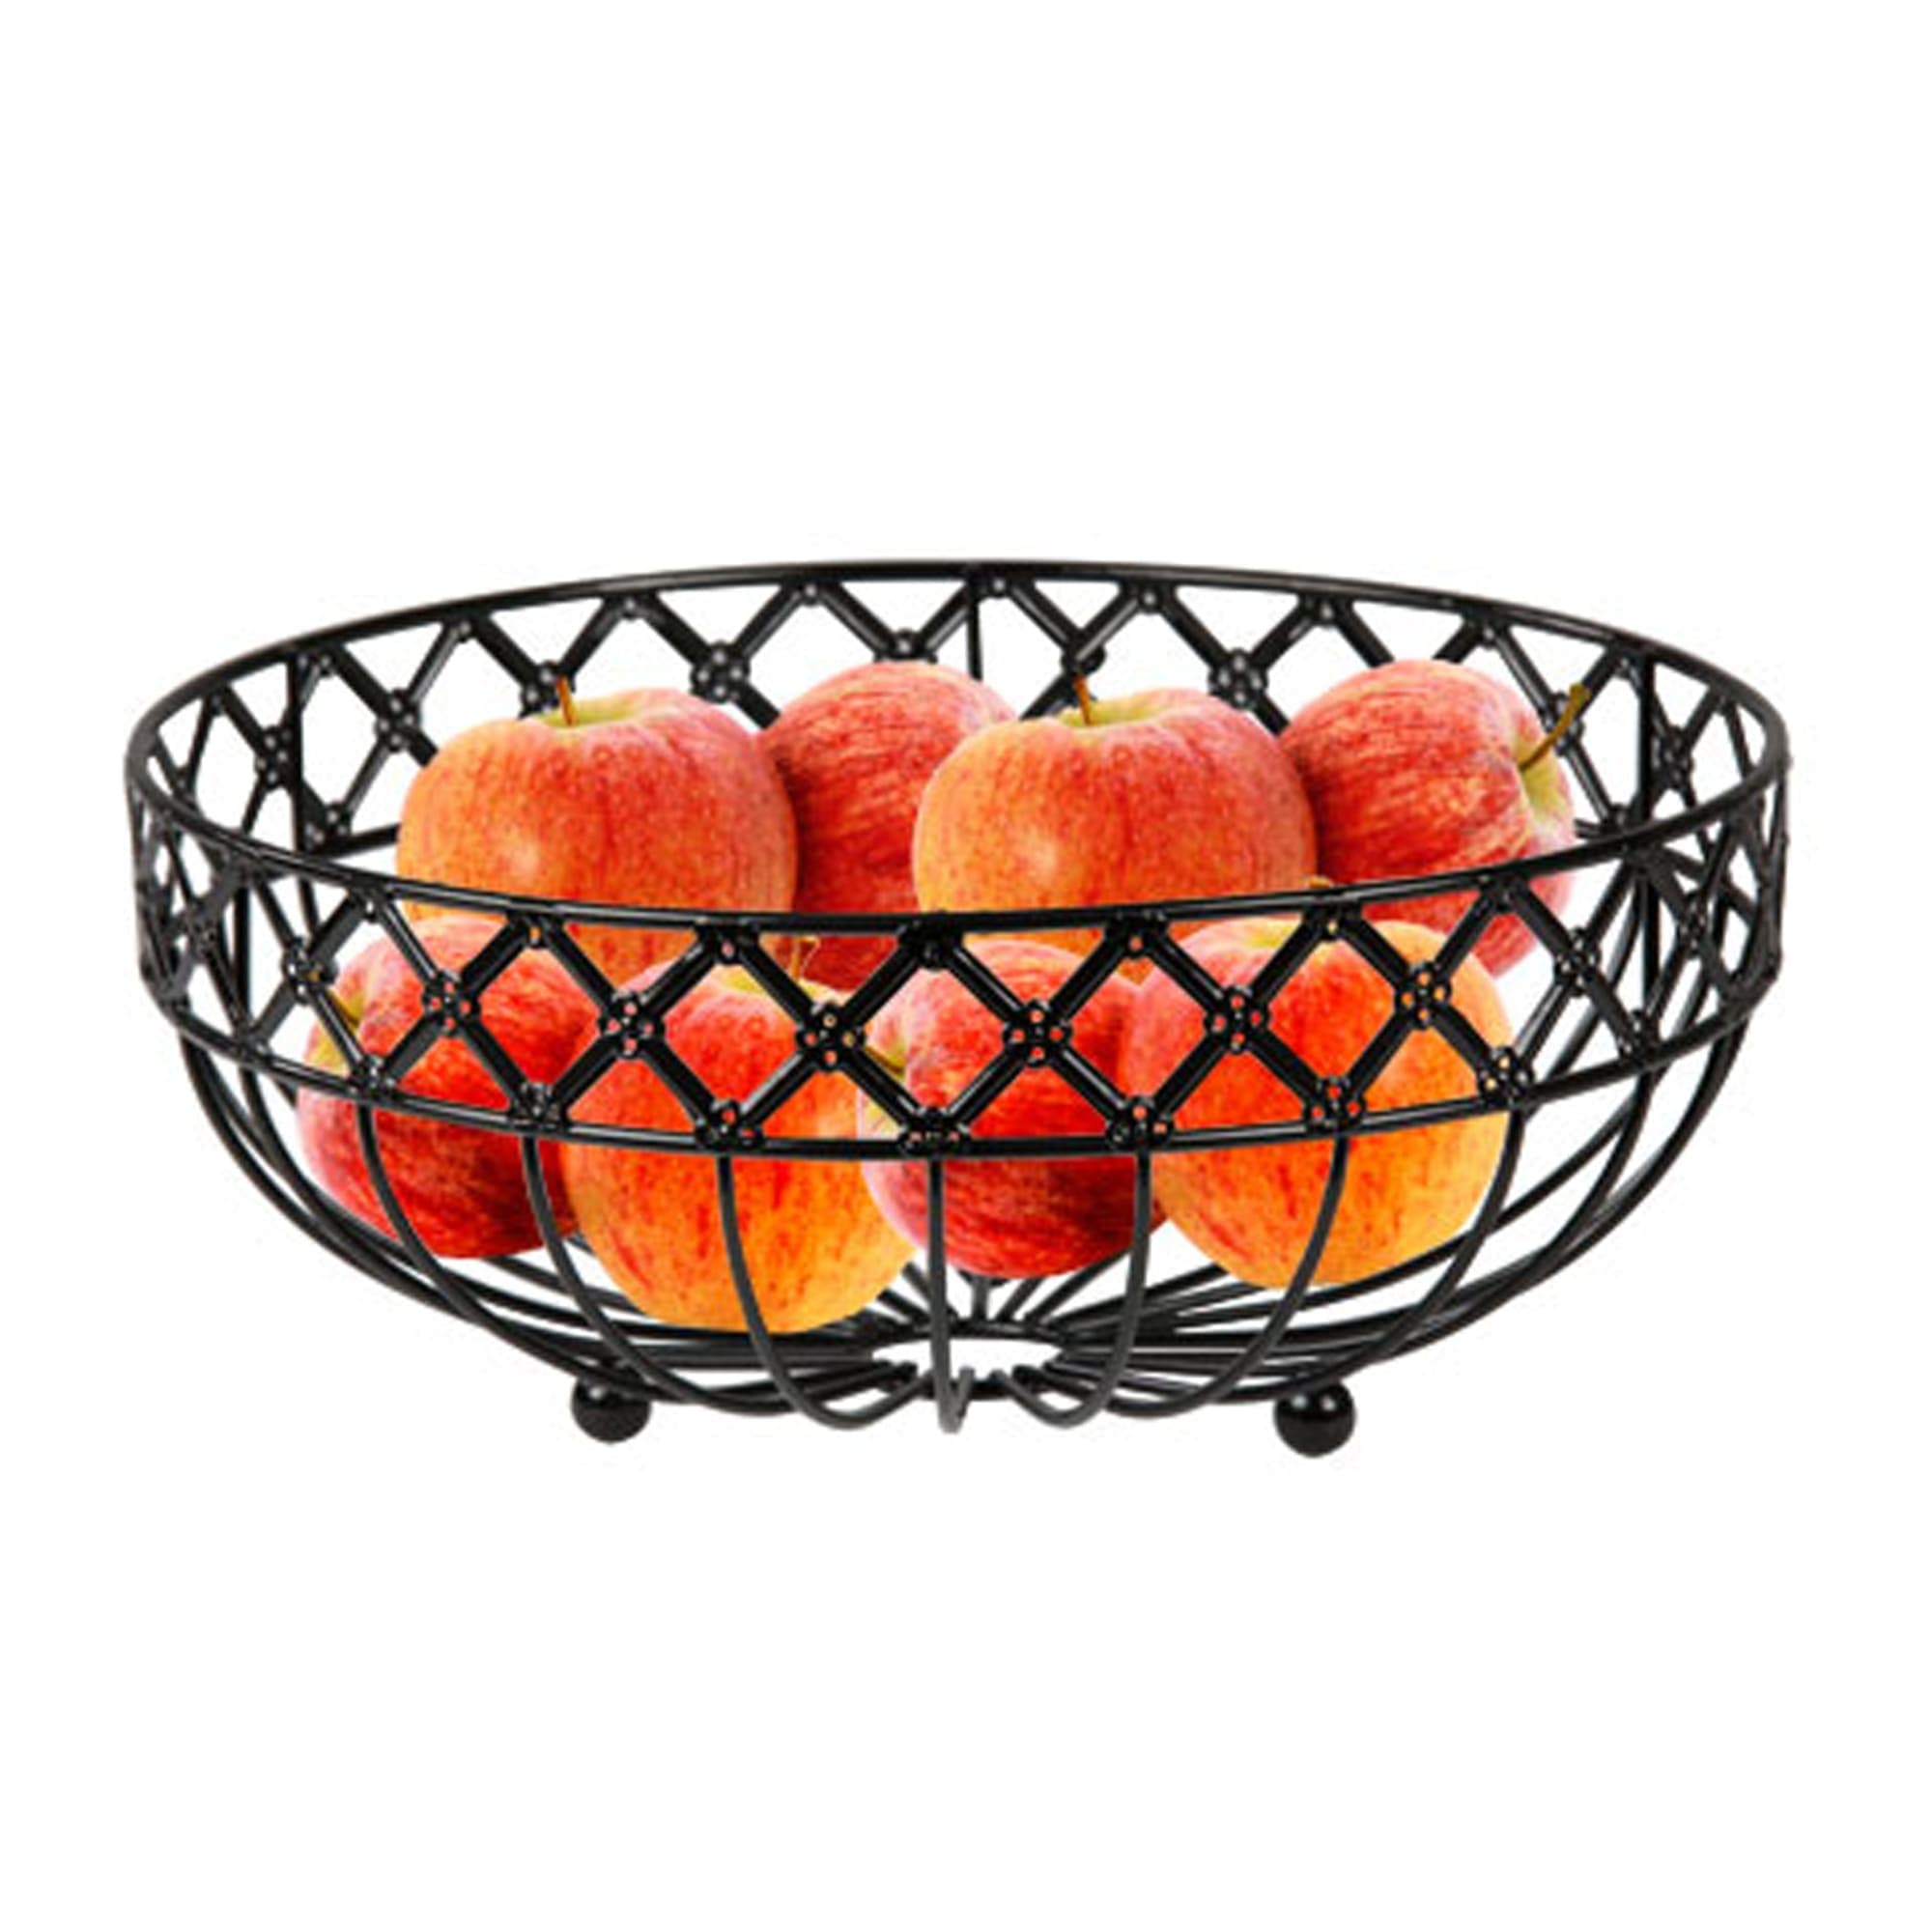 Home Basics Black Lattice Fruit Bowl $6.00 EACH, CASE PACK OF 6